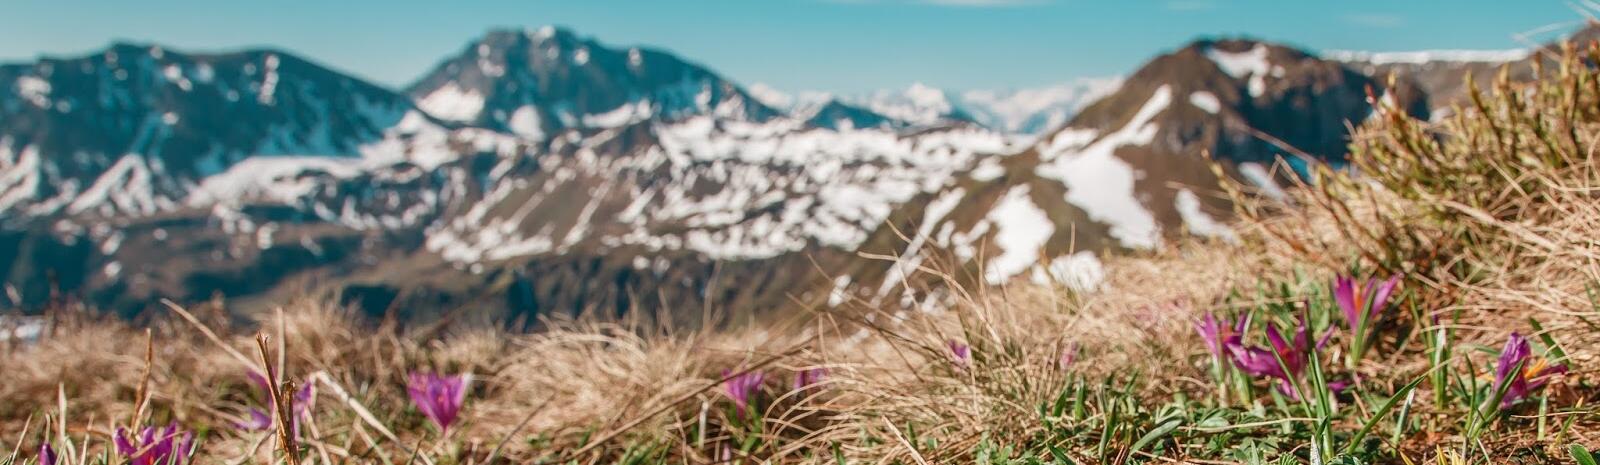 Frühlingsgrüße am Gipfel | © Best Mountain Artists